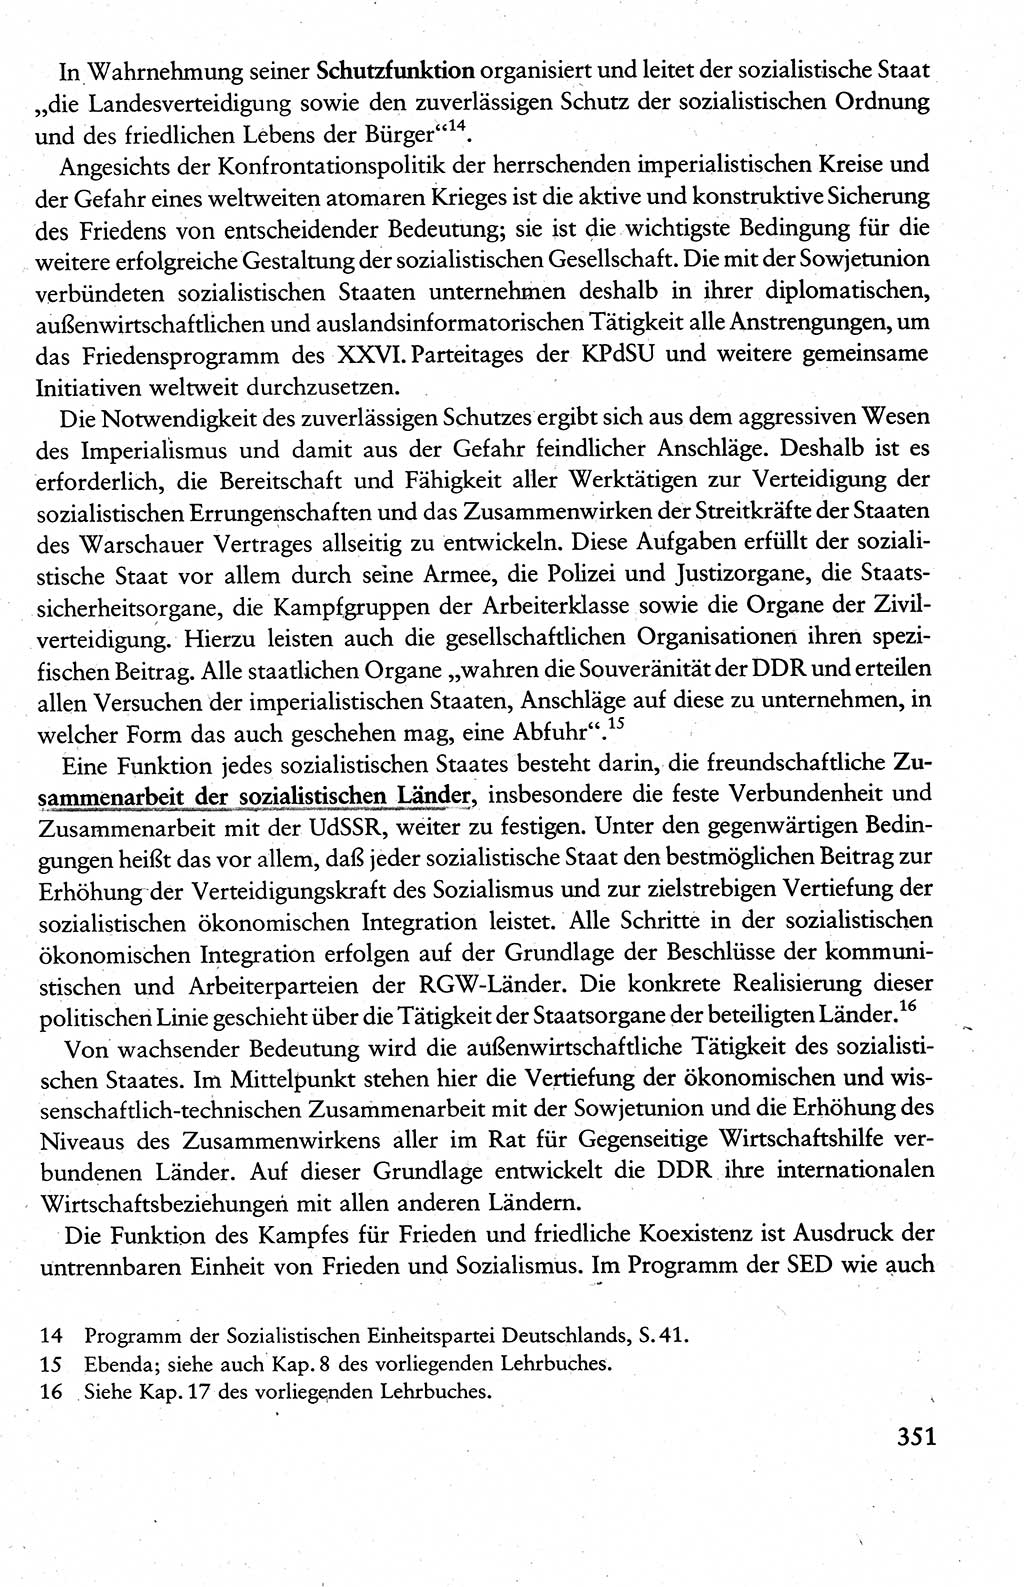 Wissenschaftlicher Kommunismus [Deutsche Demokratische Republik (DDR)], Lehrbuch für das marxistisch-leninistische Grundlagenstudium 1983, Seite 351 (Wiss. Komm. DDR Lb. 1983, S. 351)